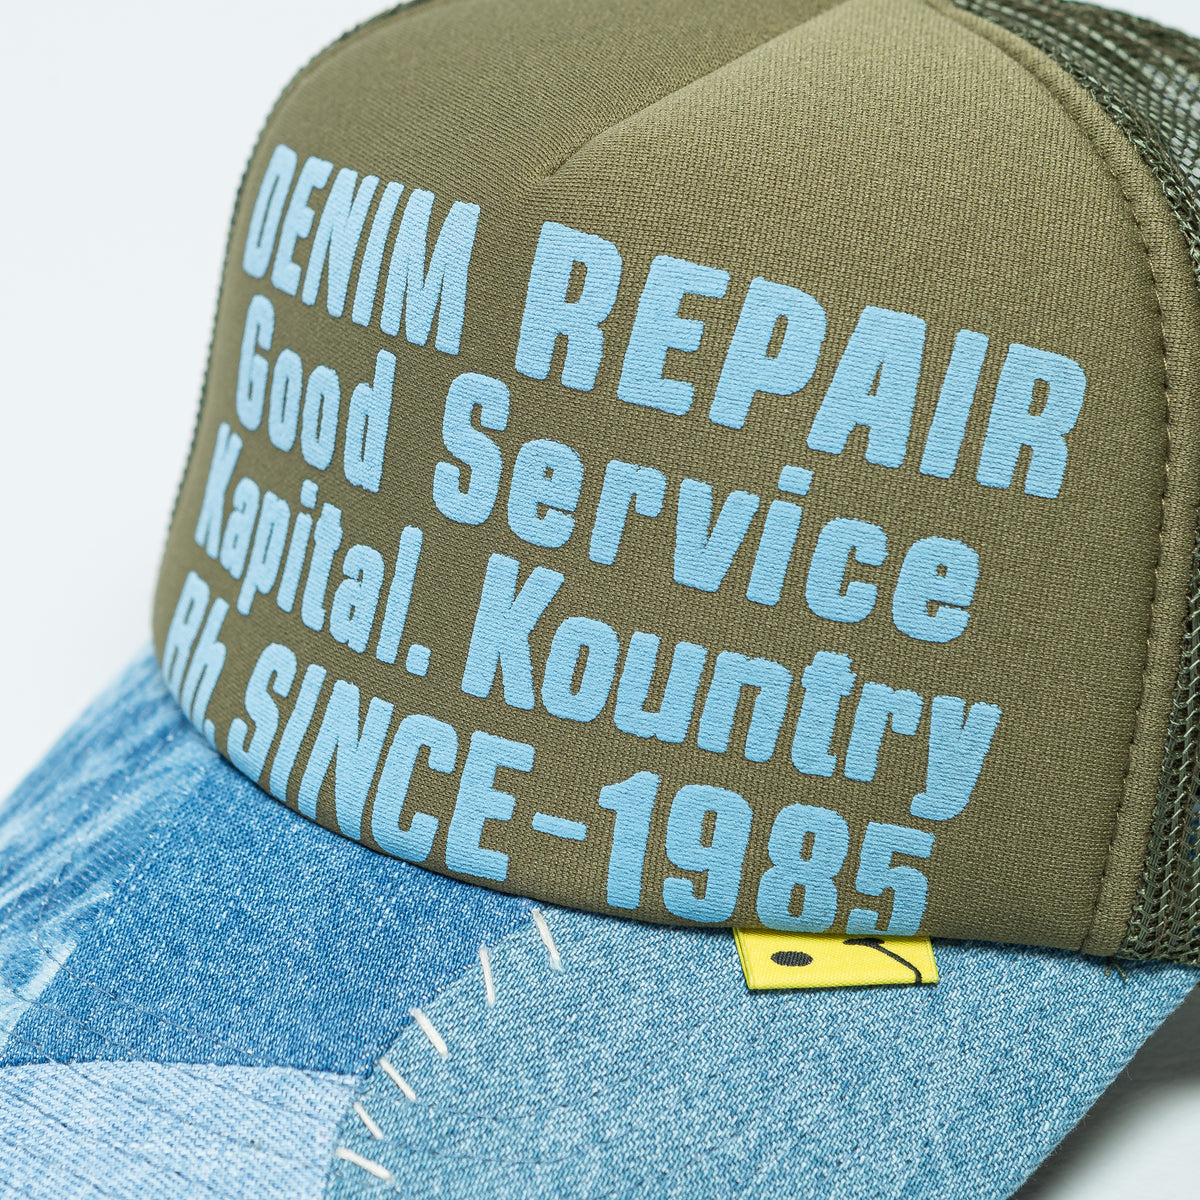 DENIM Repairing Service #kapital #kapitallegs #denim #denimrepair #repair  #mending #sustainablefashion #修理